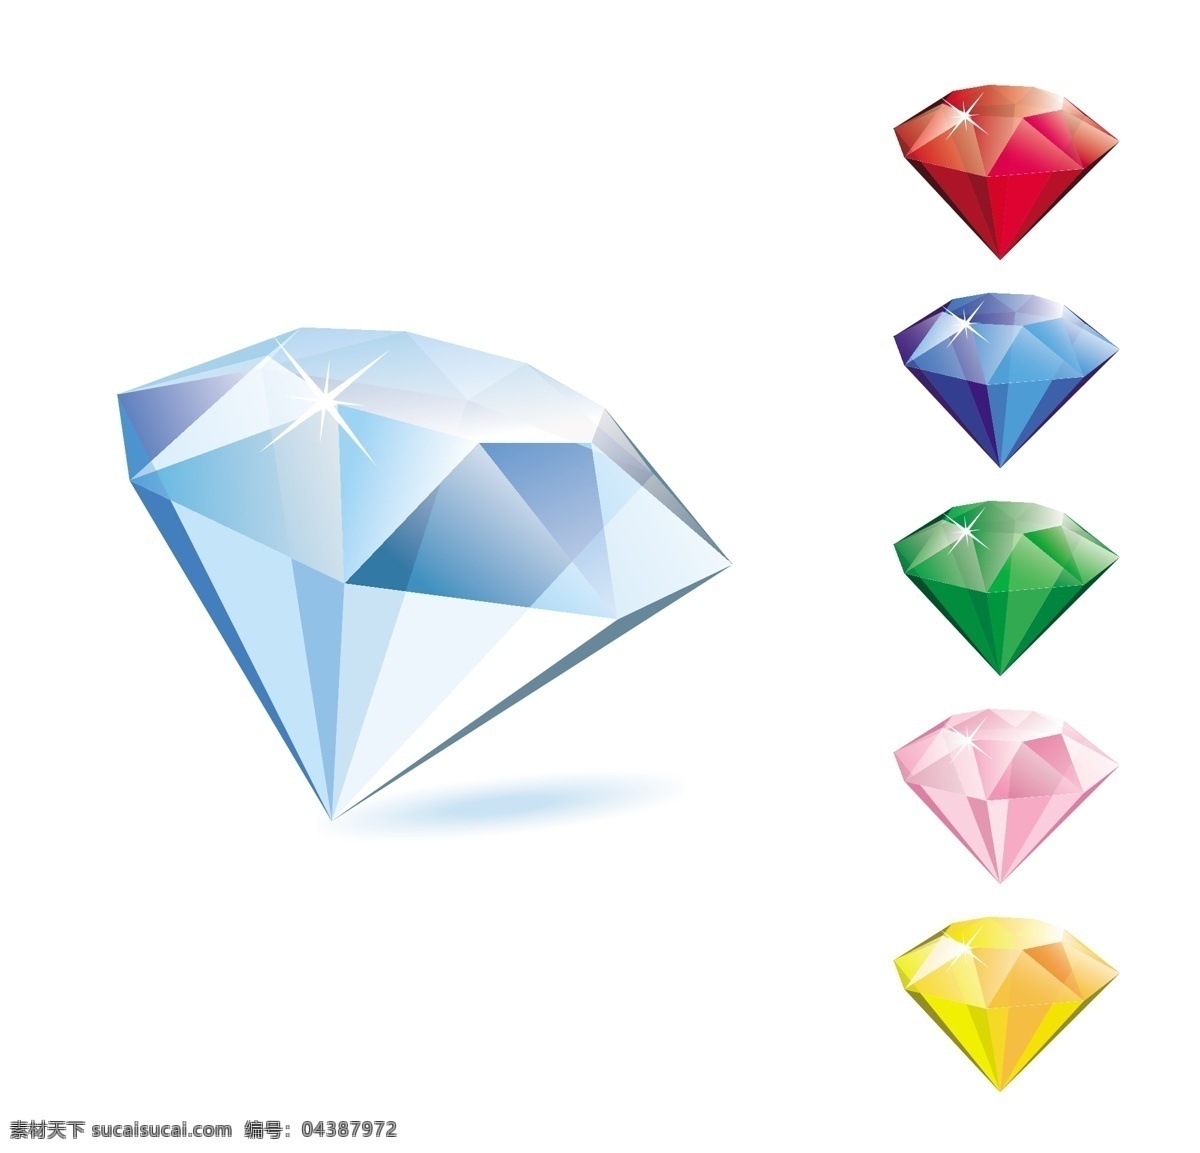 创意 宝石 装饰 图案 彩色钻石 彩色 钻石宝石 钻石 亮晶晶 闪耀 光彩夺目 晶莹剔透 天然矿石 珍贵 稀有 饰品